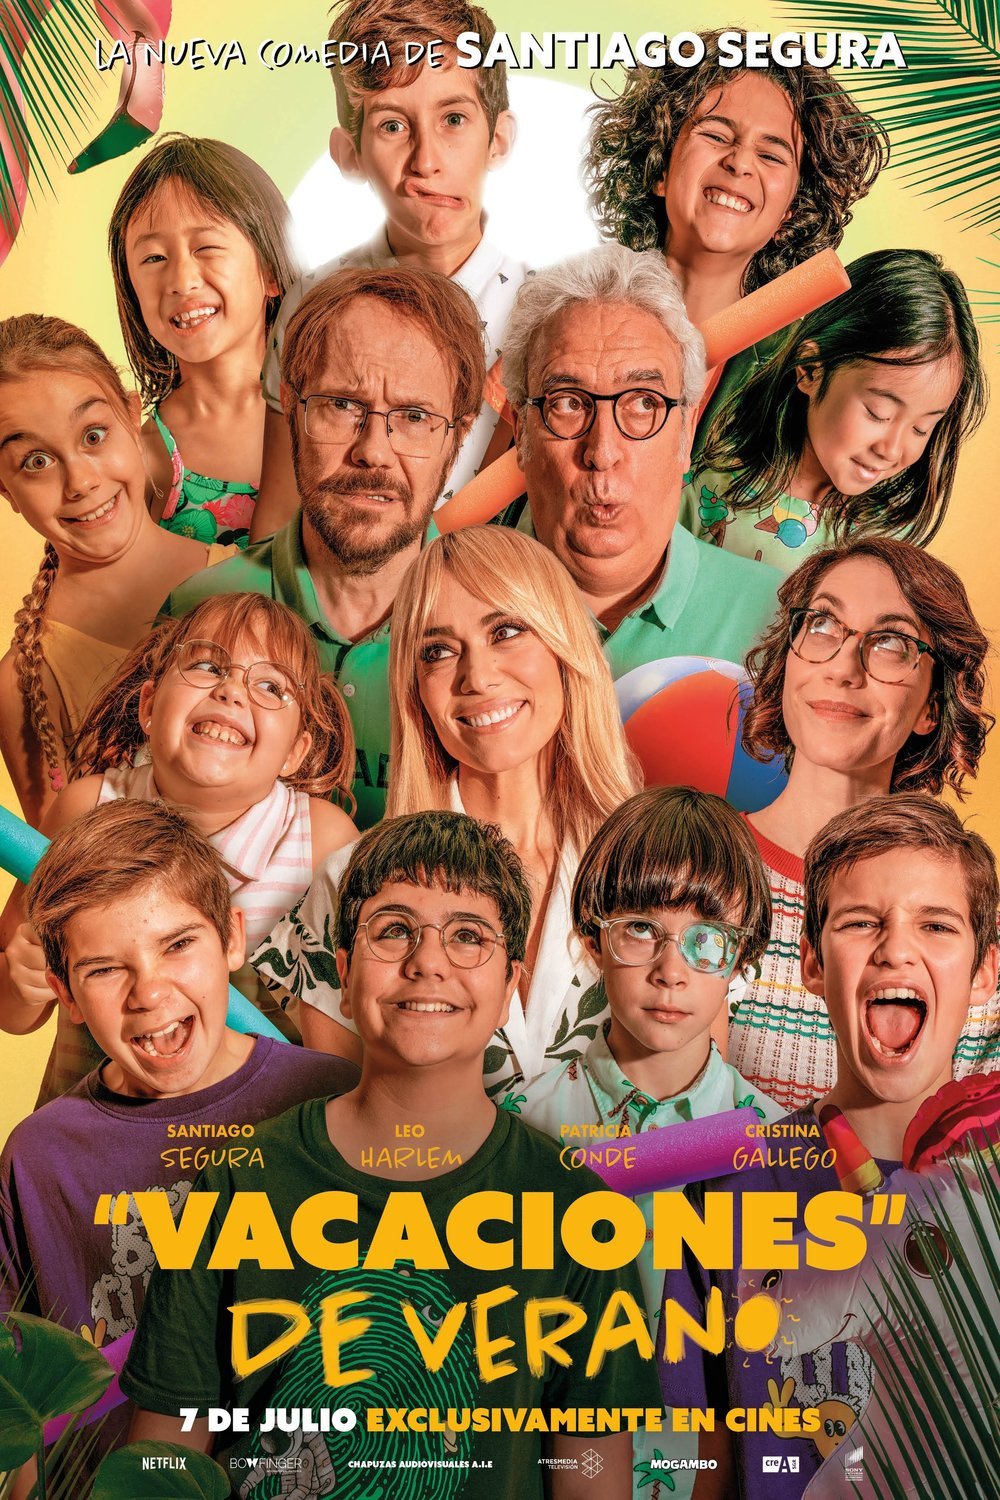 L'affiche originale du film Vacaciones de verano en espagnol